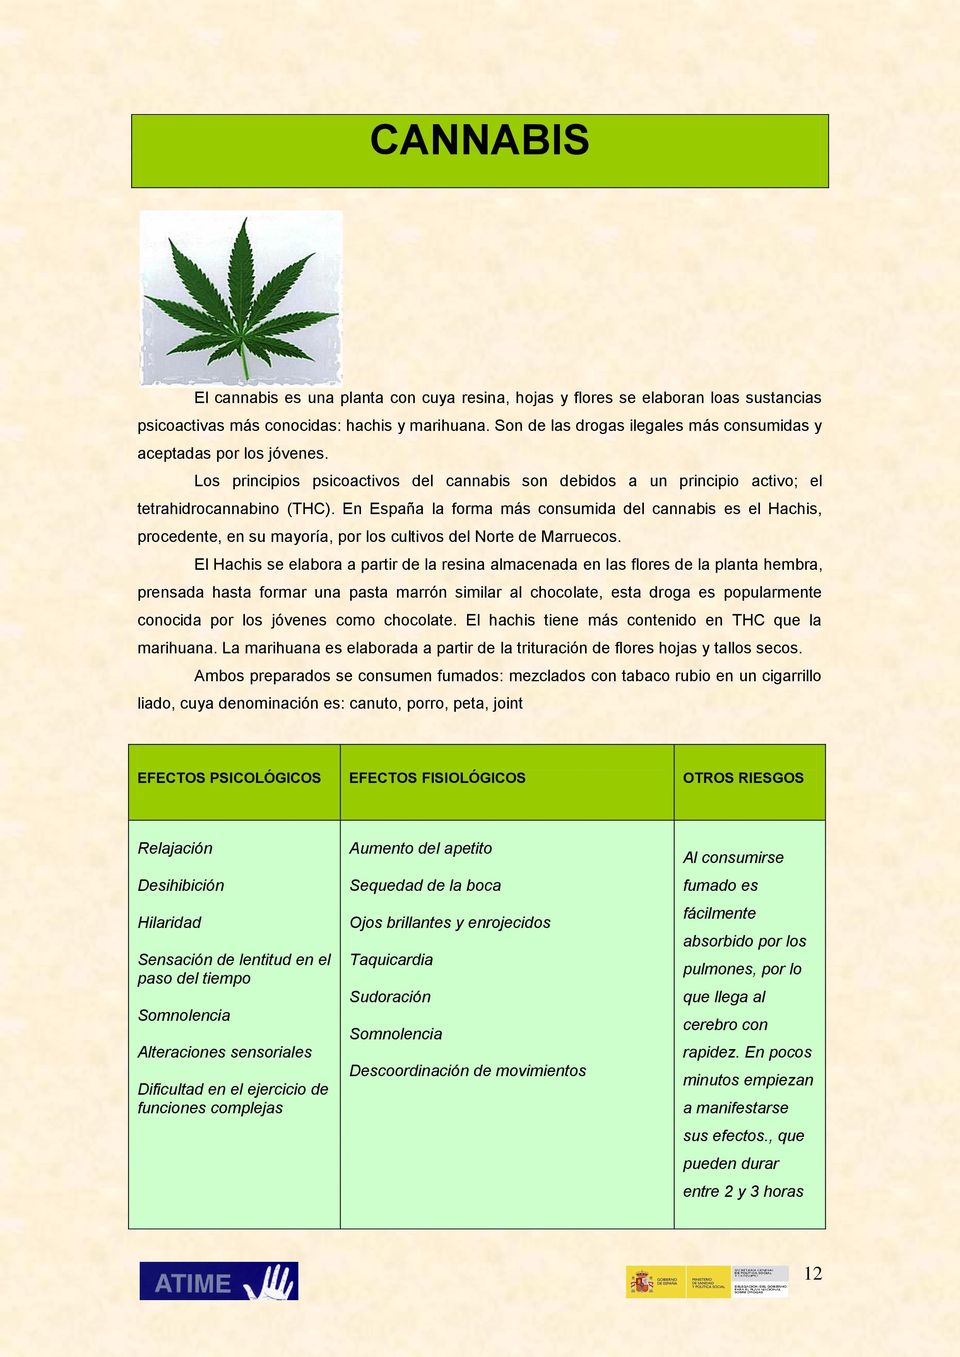 En España la forma más consumida del cannabis es el Hachis, procedente, en su mayoría, por los cultivos del Norte de Marruecos.